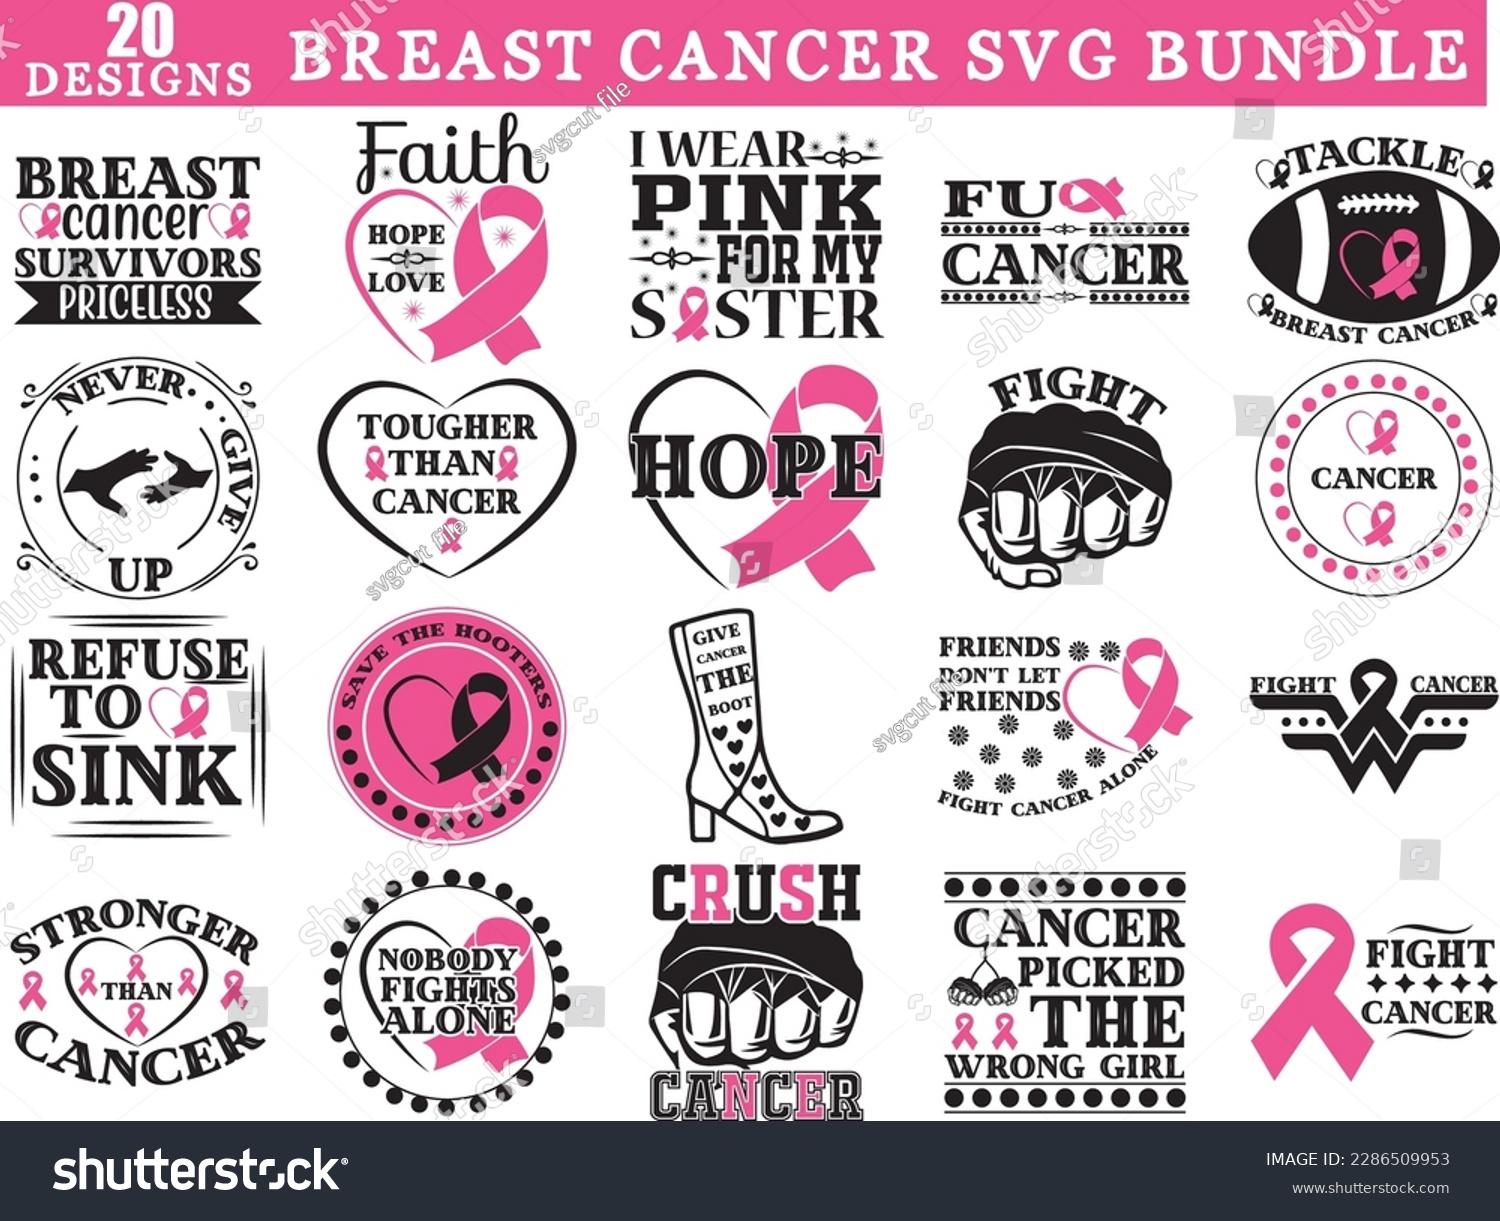 SVG of Breast Cancer SVG Bundle, Breast Cancer SVG design, Breast Cancer SVG svg